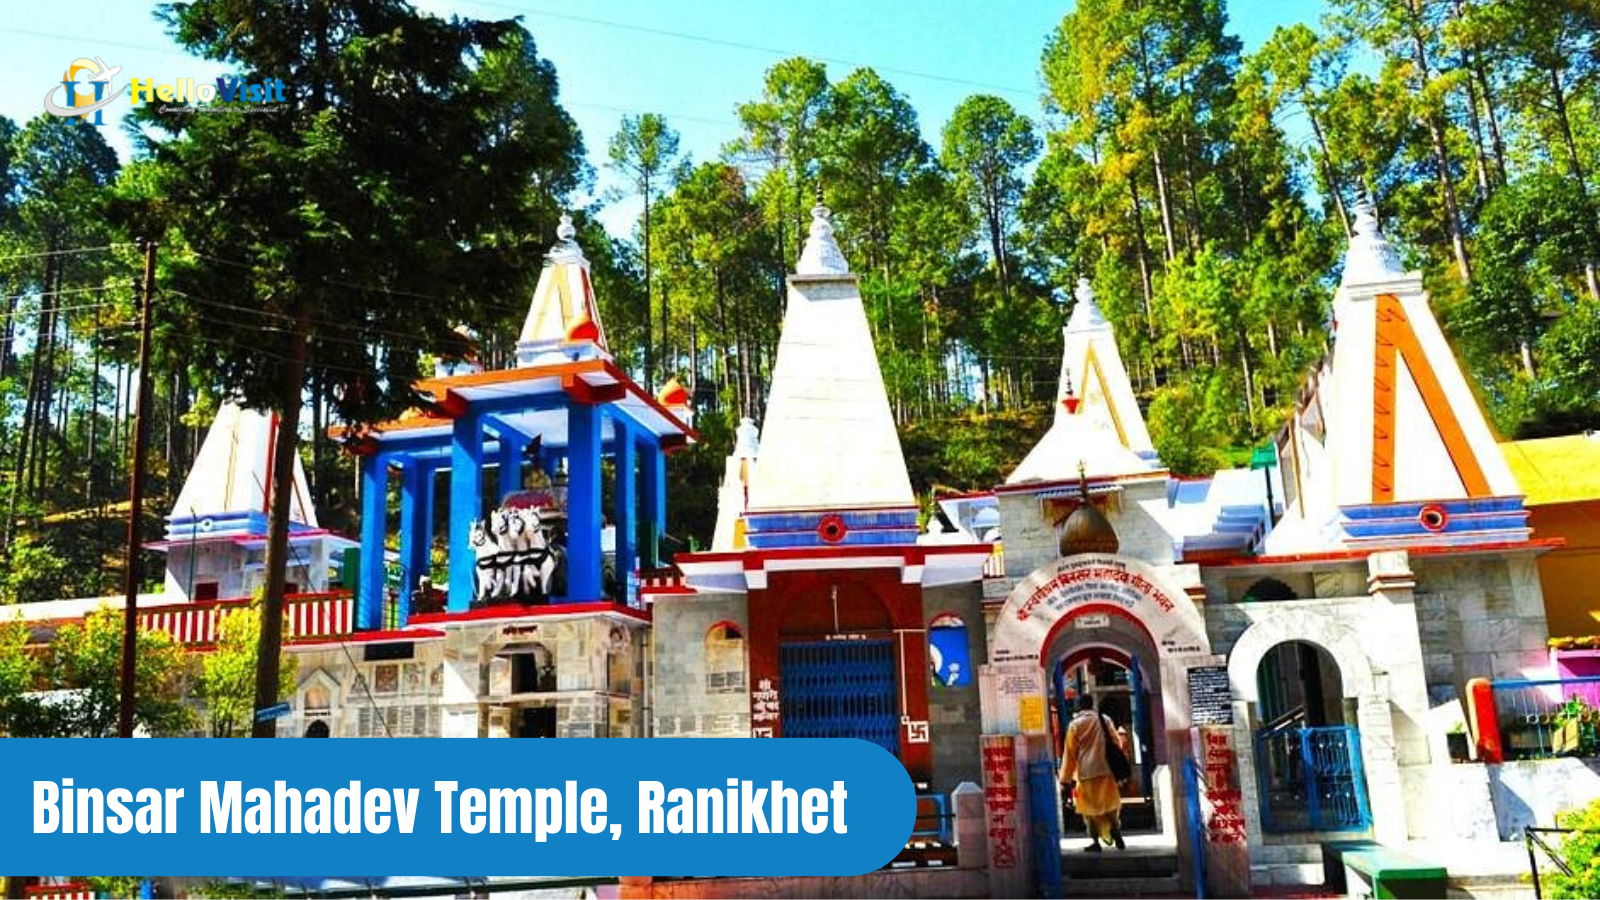 Binsar Mahadev Temple, Ranikhet